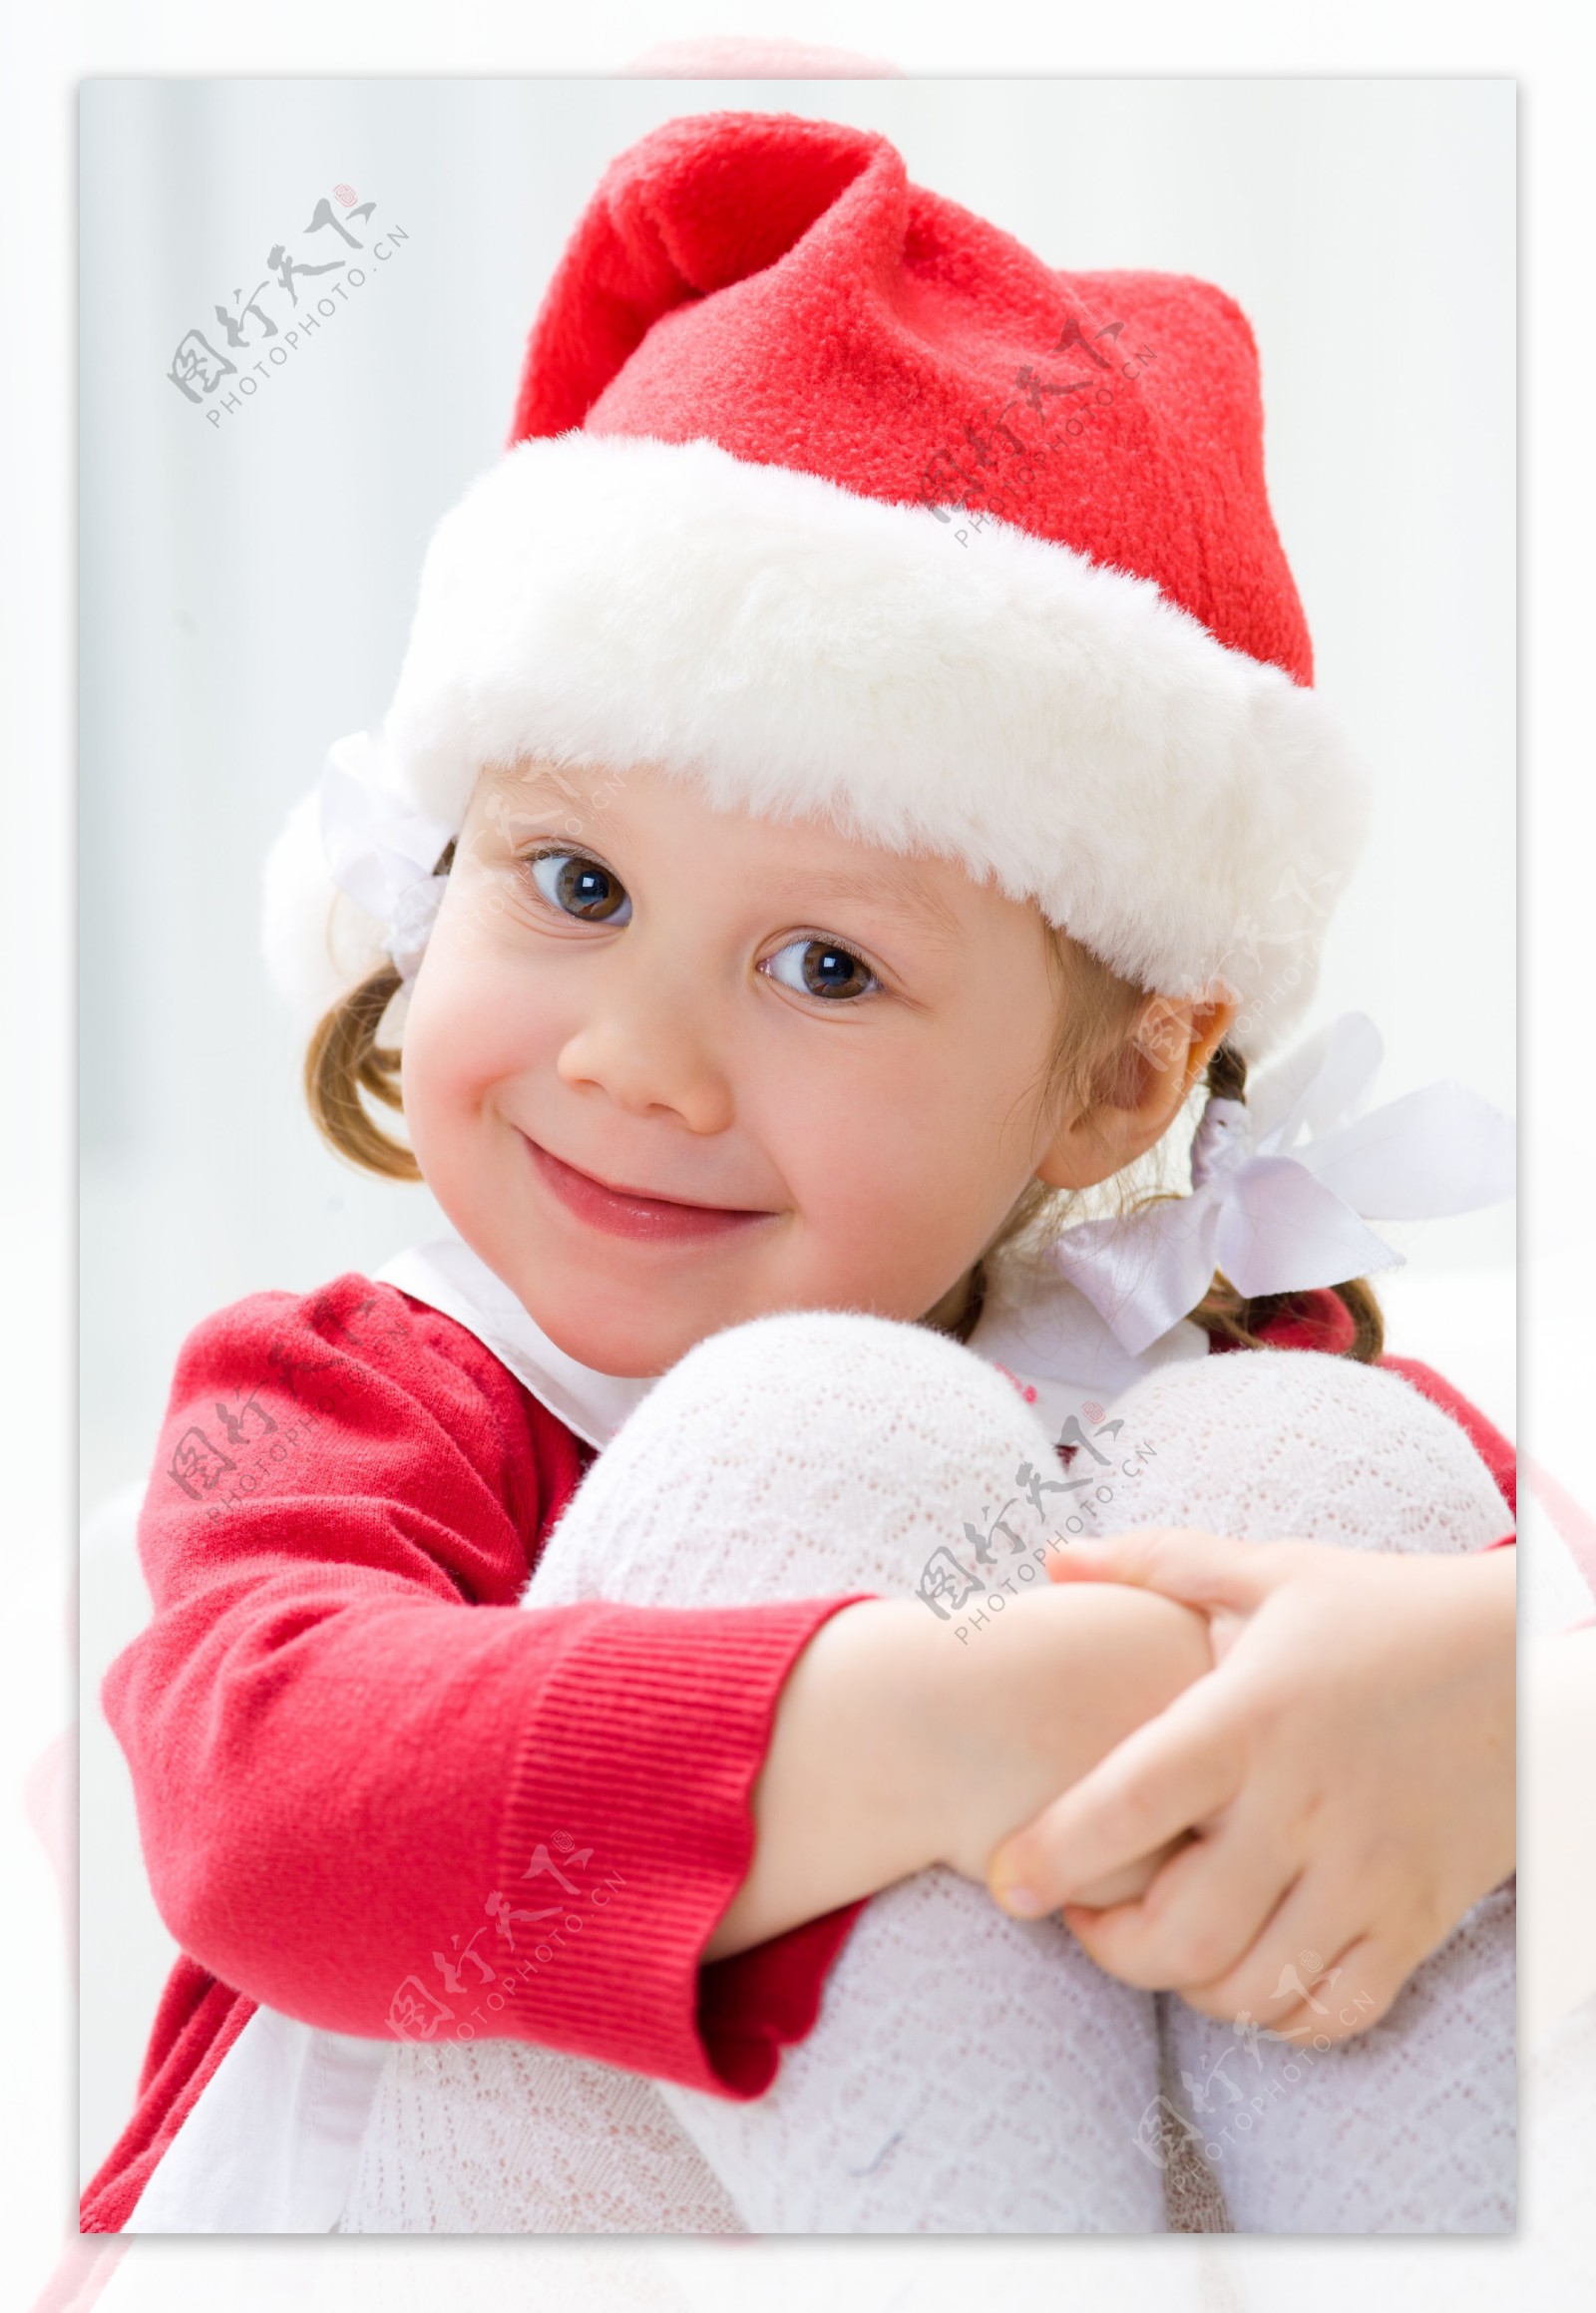 双手抱膝的外国圣诞装女孩图片